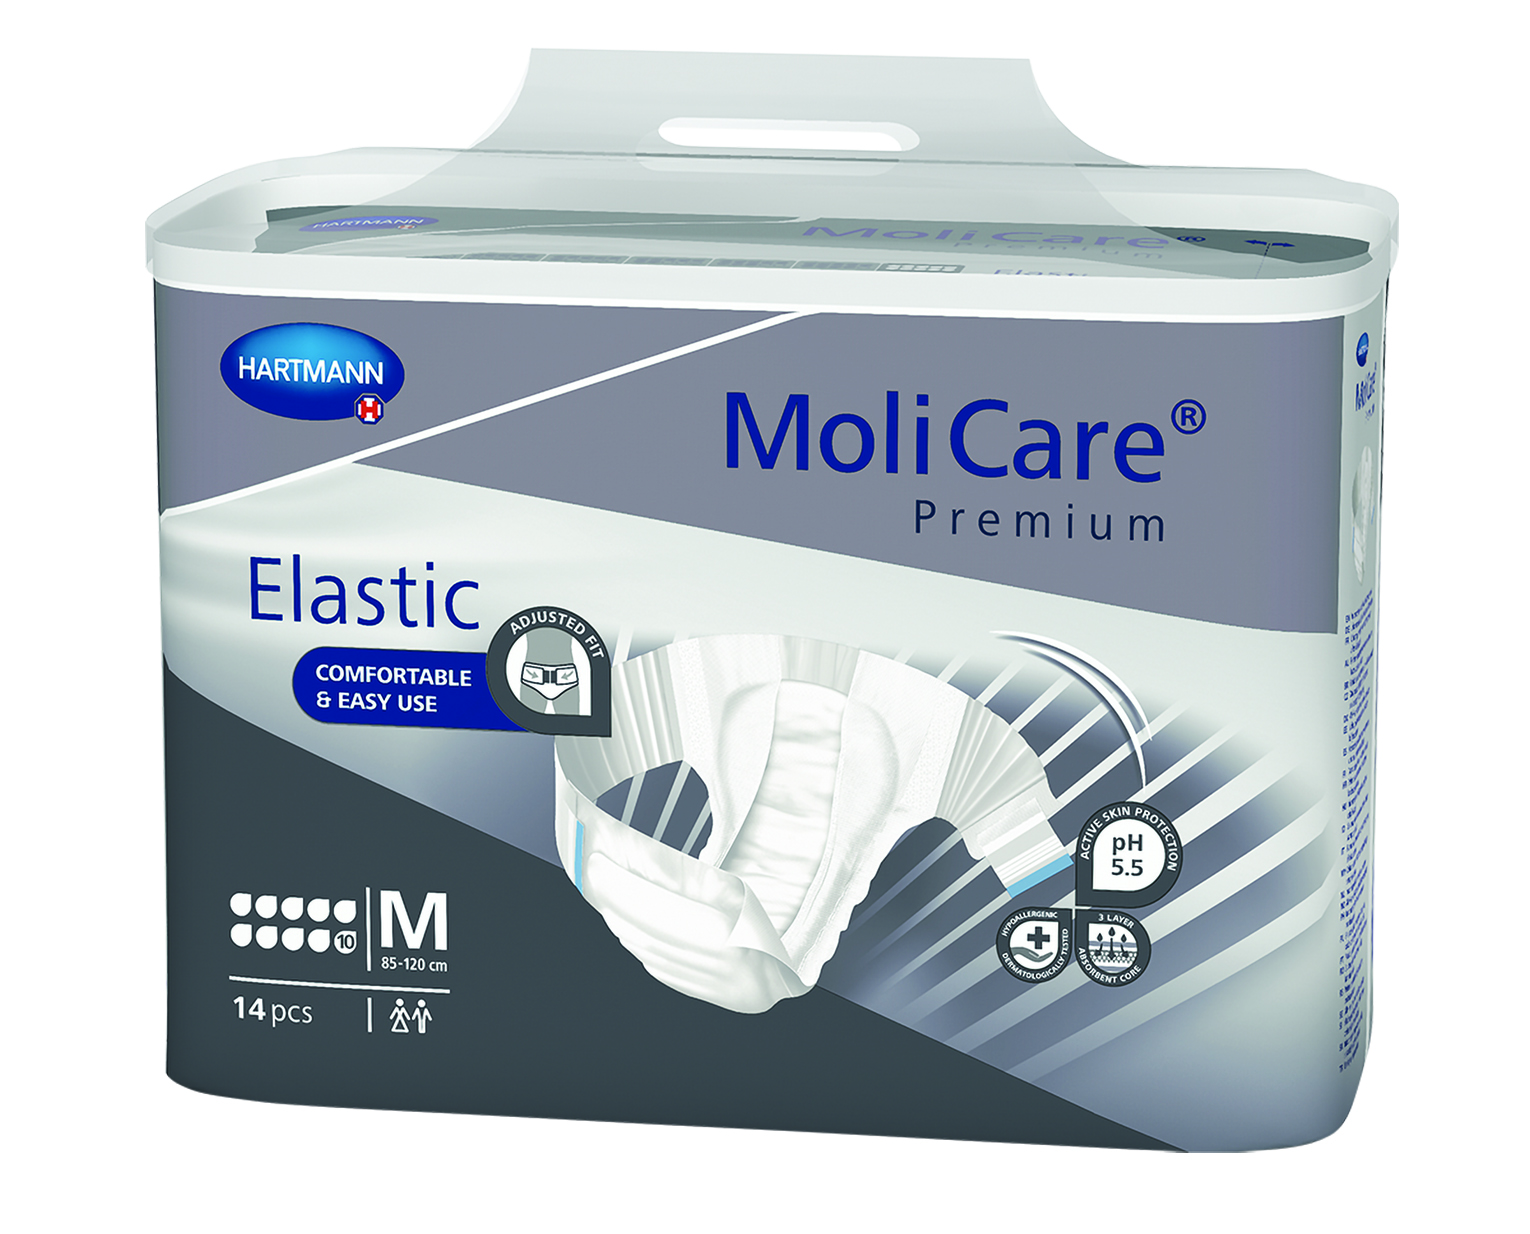 MoliCare Premium Elastic 10D Incontinence Briefs